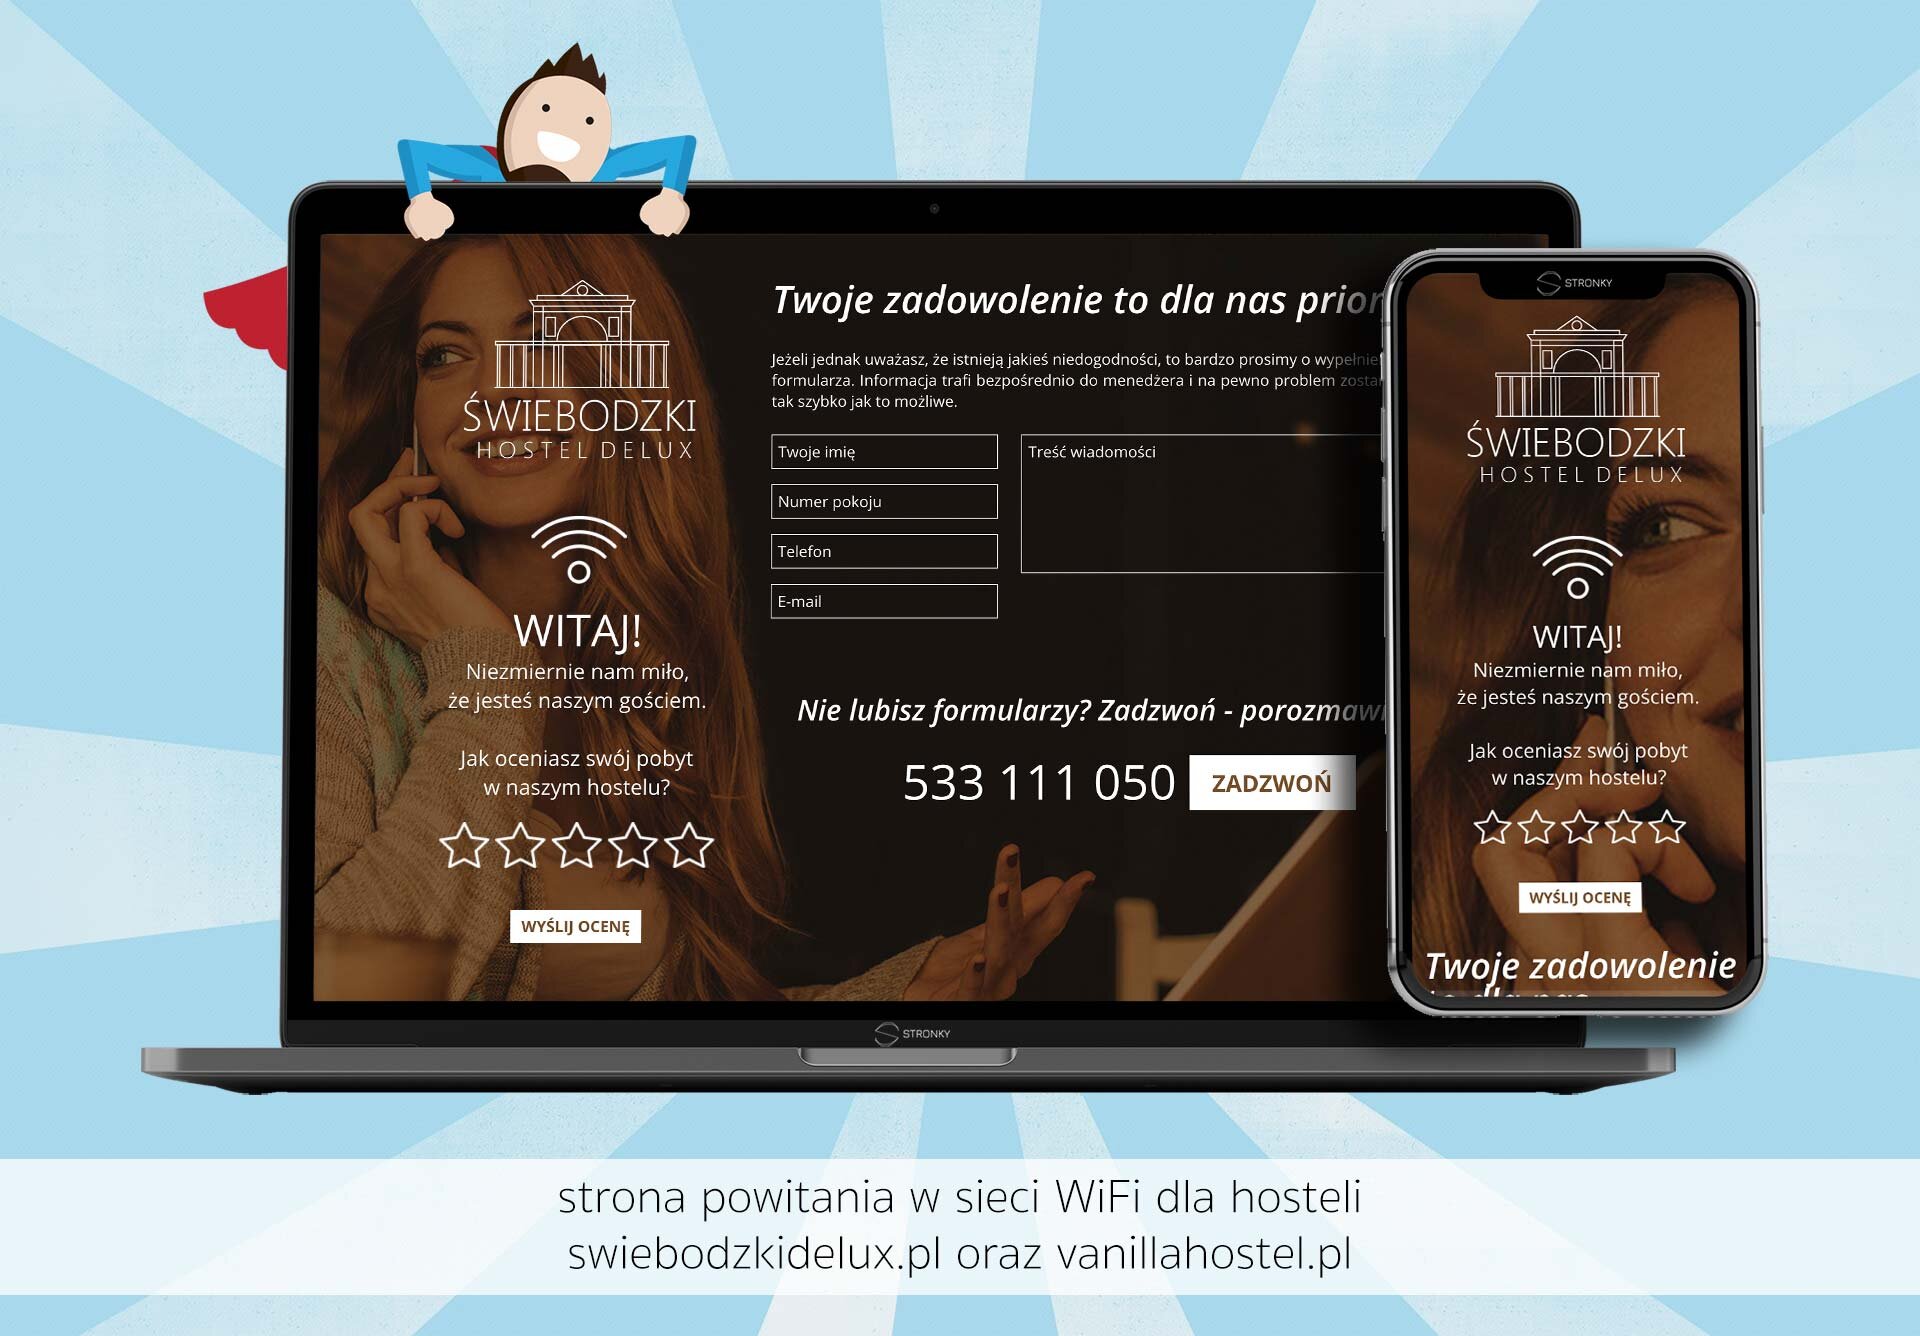 Strona powitania WiFi dla hosteli - screen